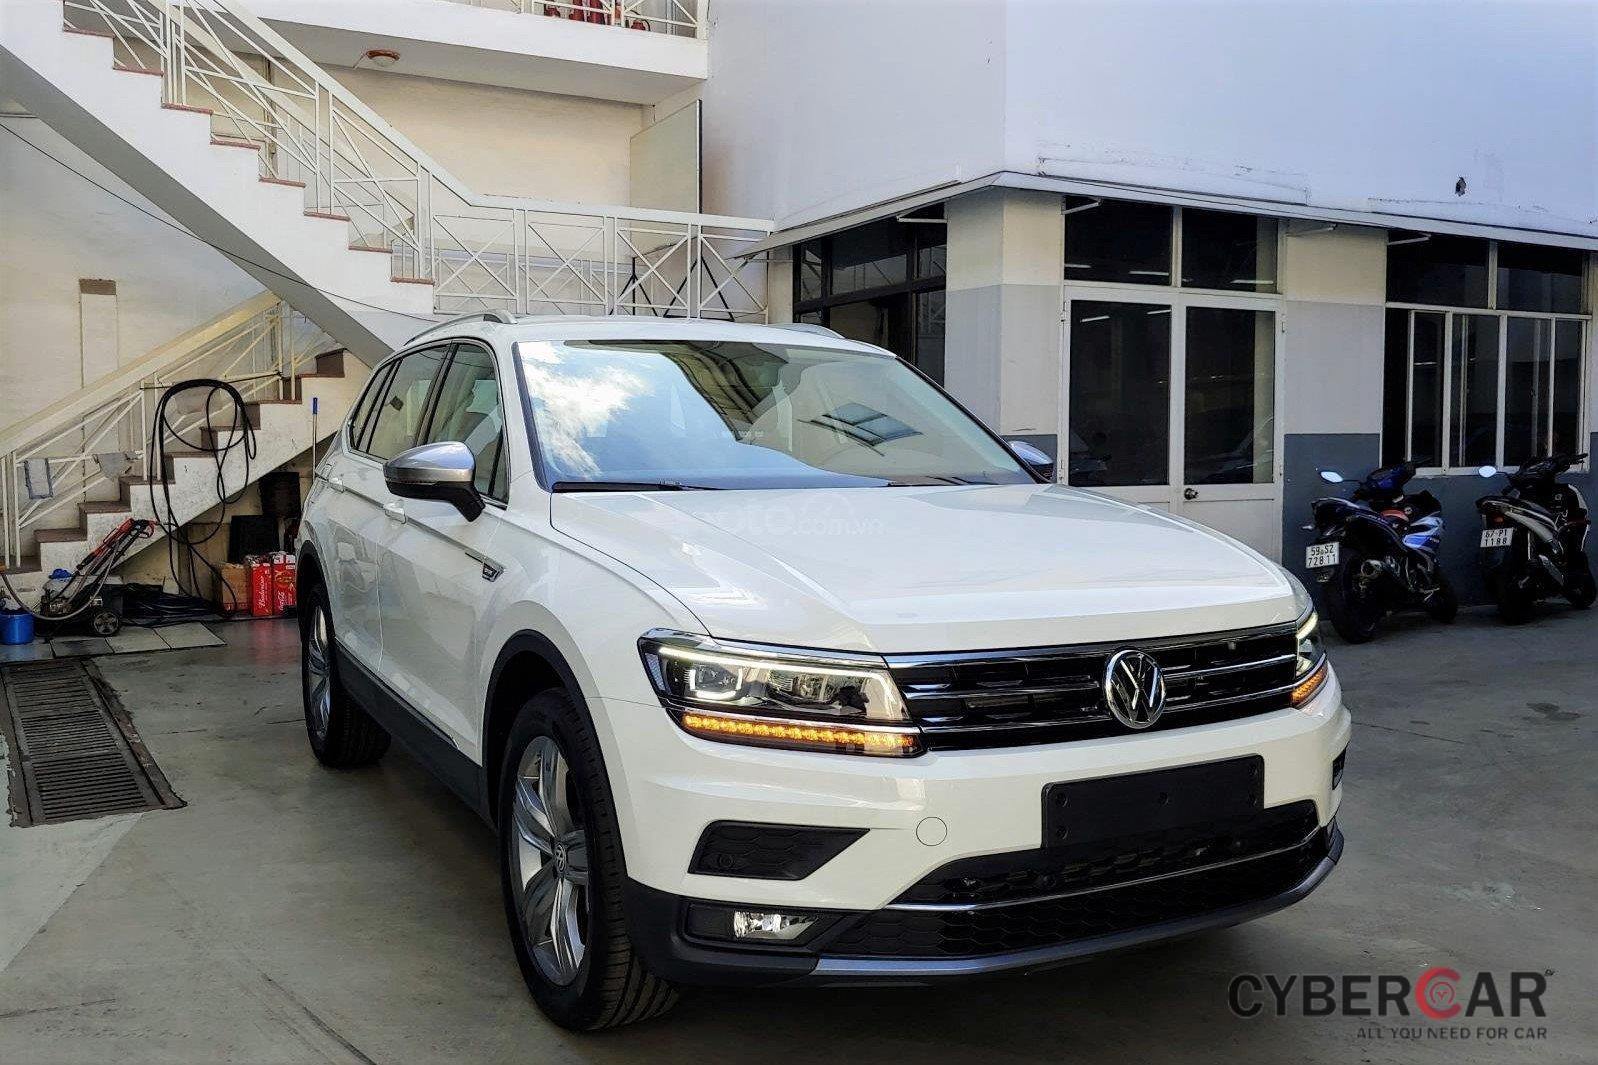 Volkswagen Tiguan Allspace là lựa chọn phù hợp trong tầm giá 2 tỷ đồng.